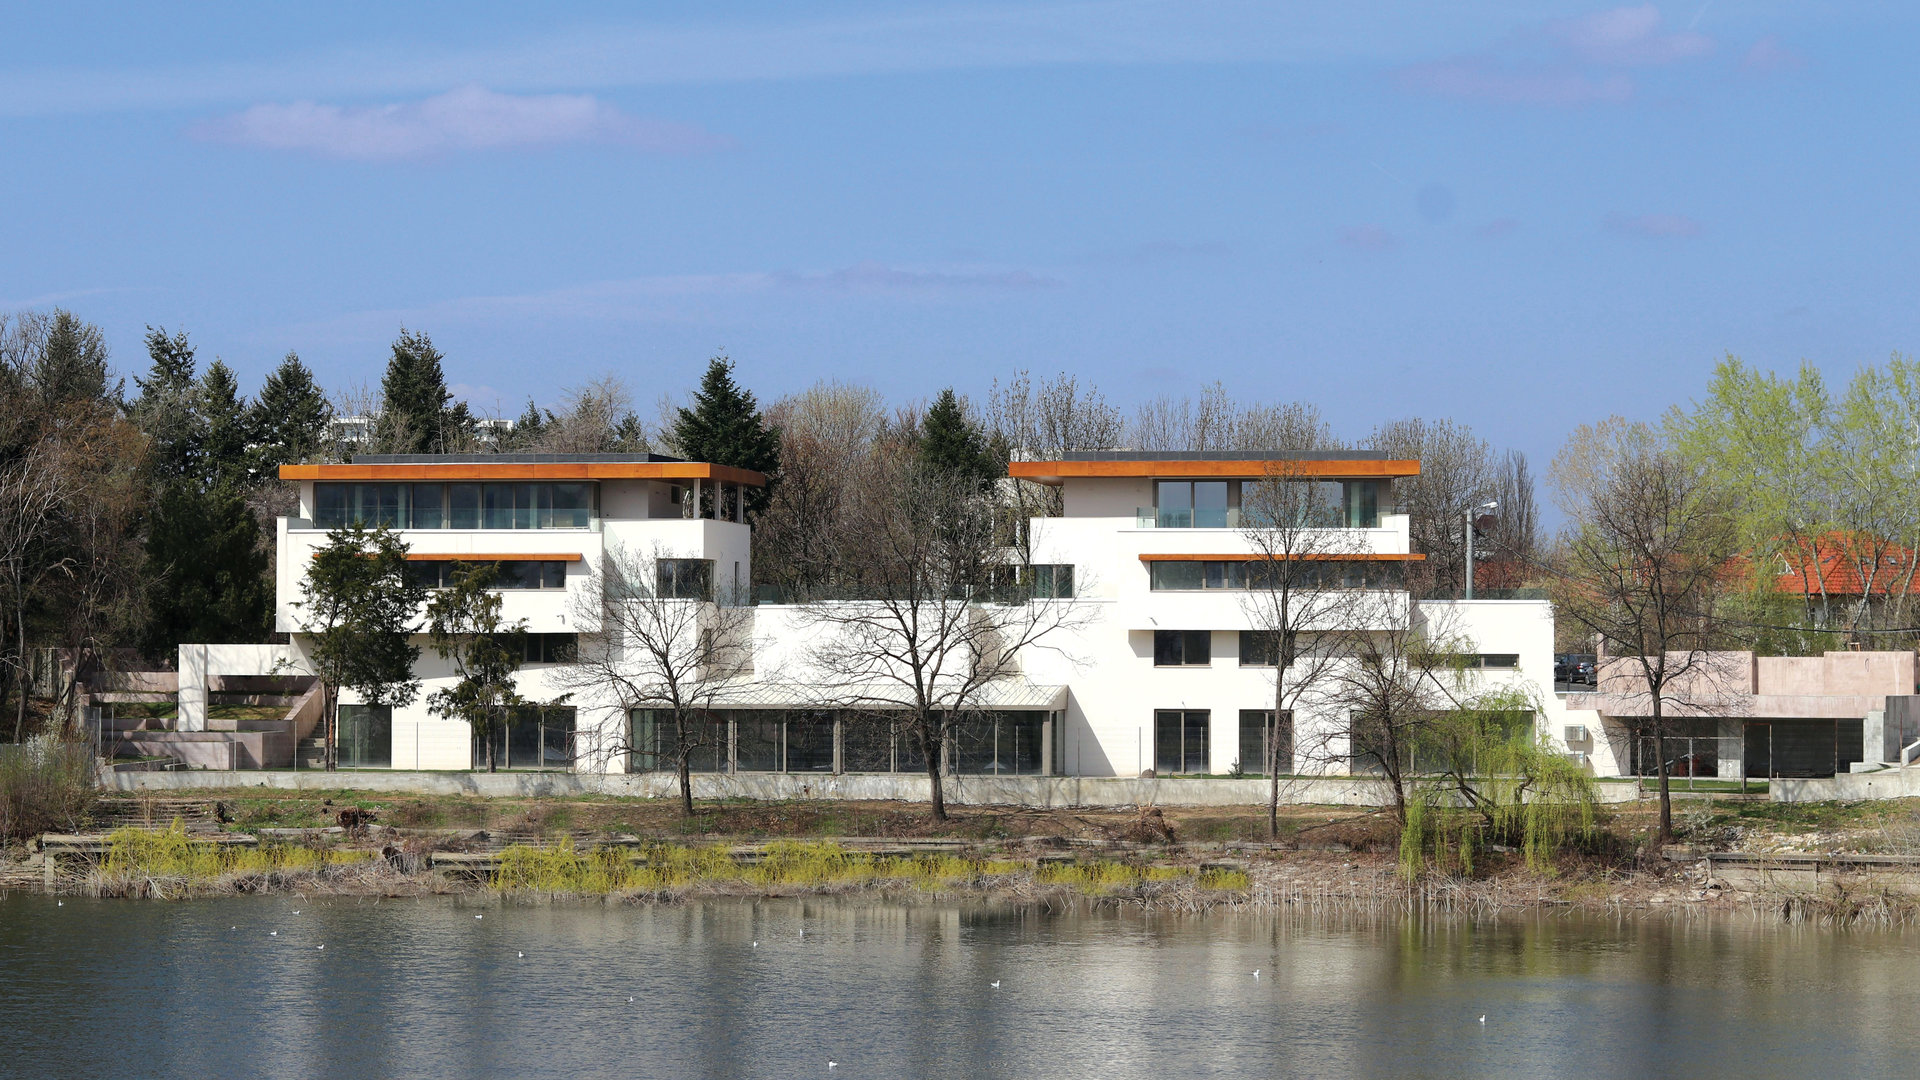 Low-Rise Housing on Lake Floreasca